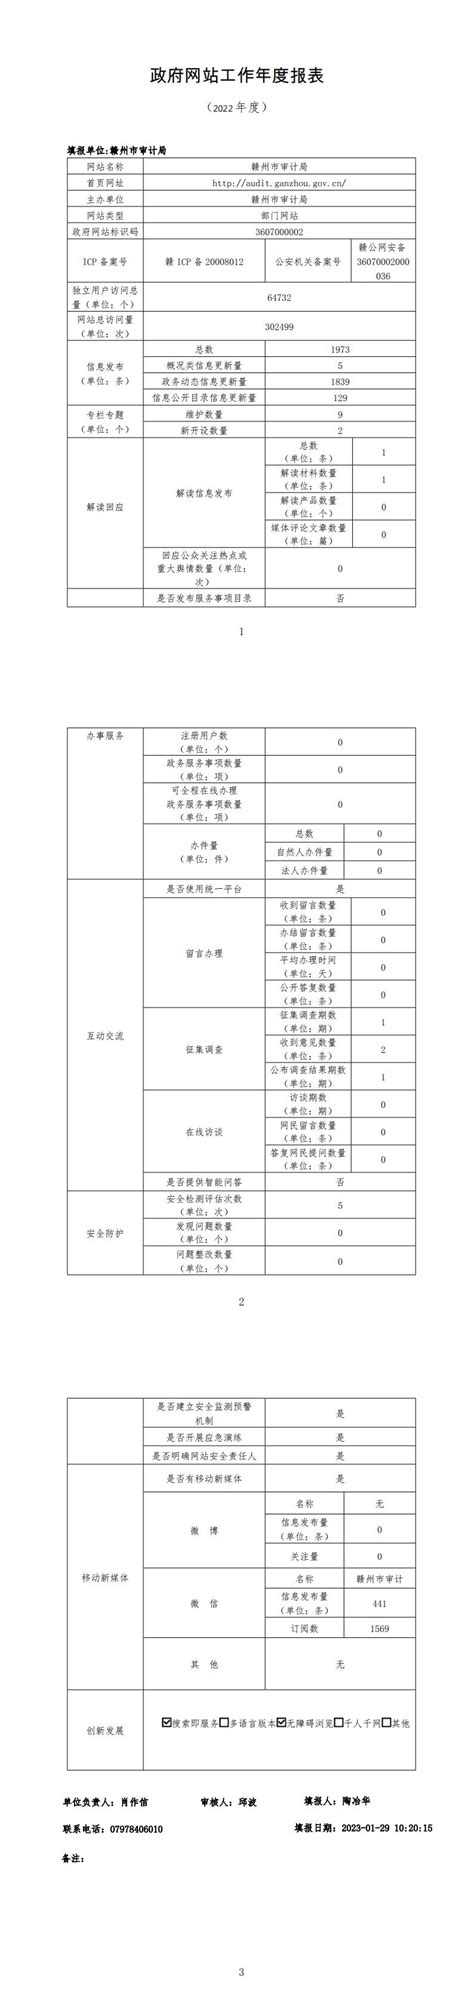 赣州市2021年政府信息公开工作年度报告（图文版） | 赣州市政府信息公开